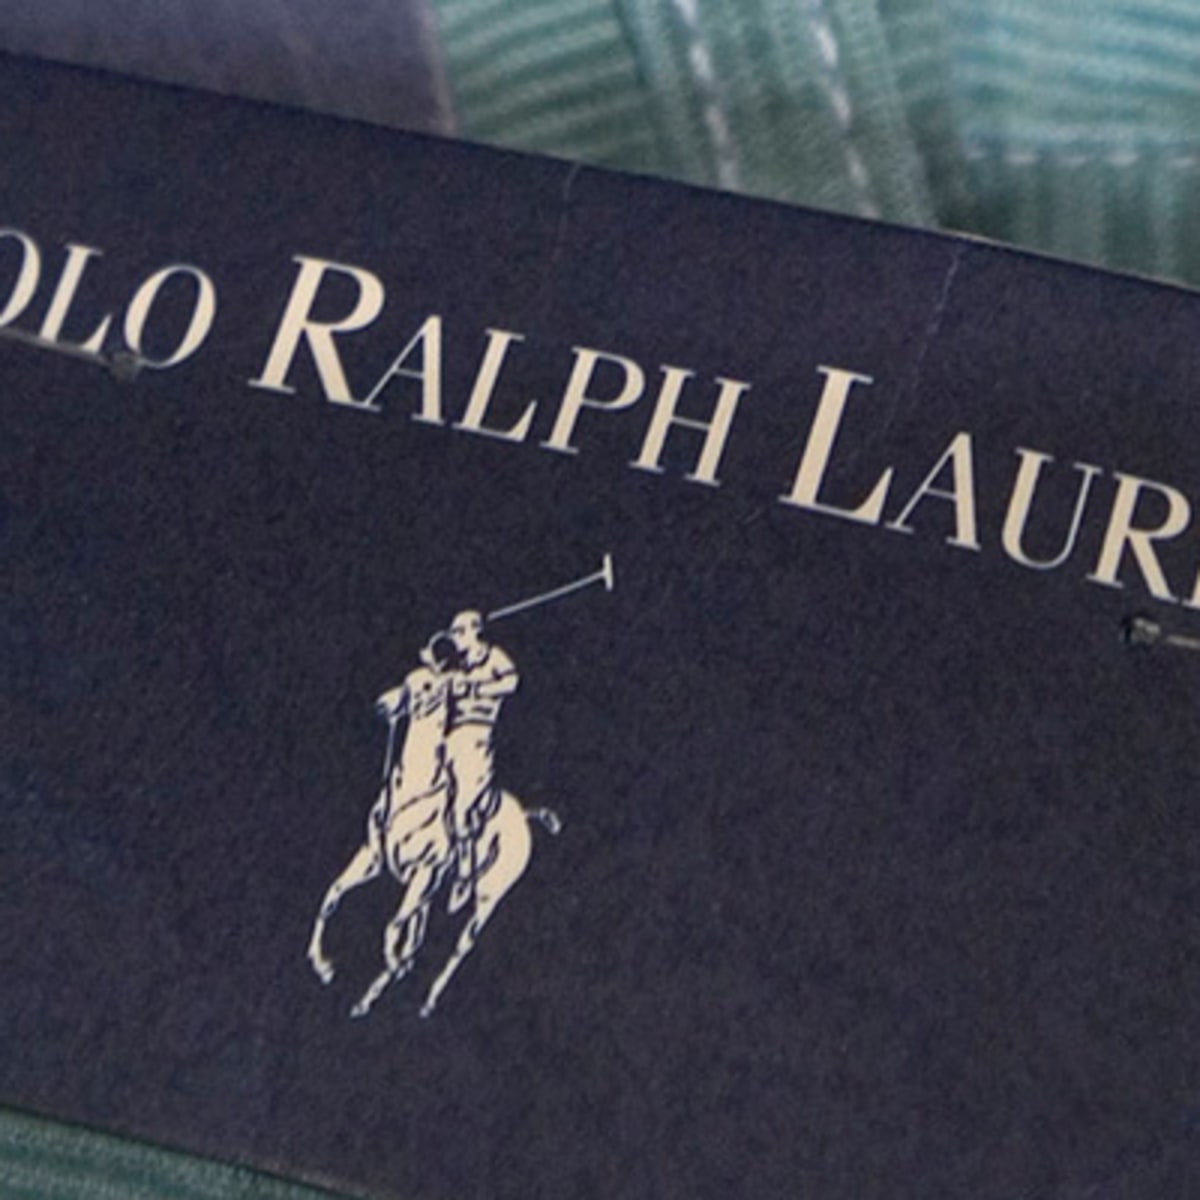 Ralph Lauren Names Patrice Louvet its New CEO